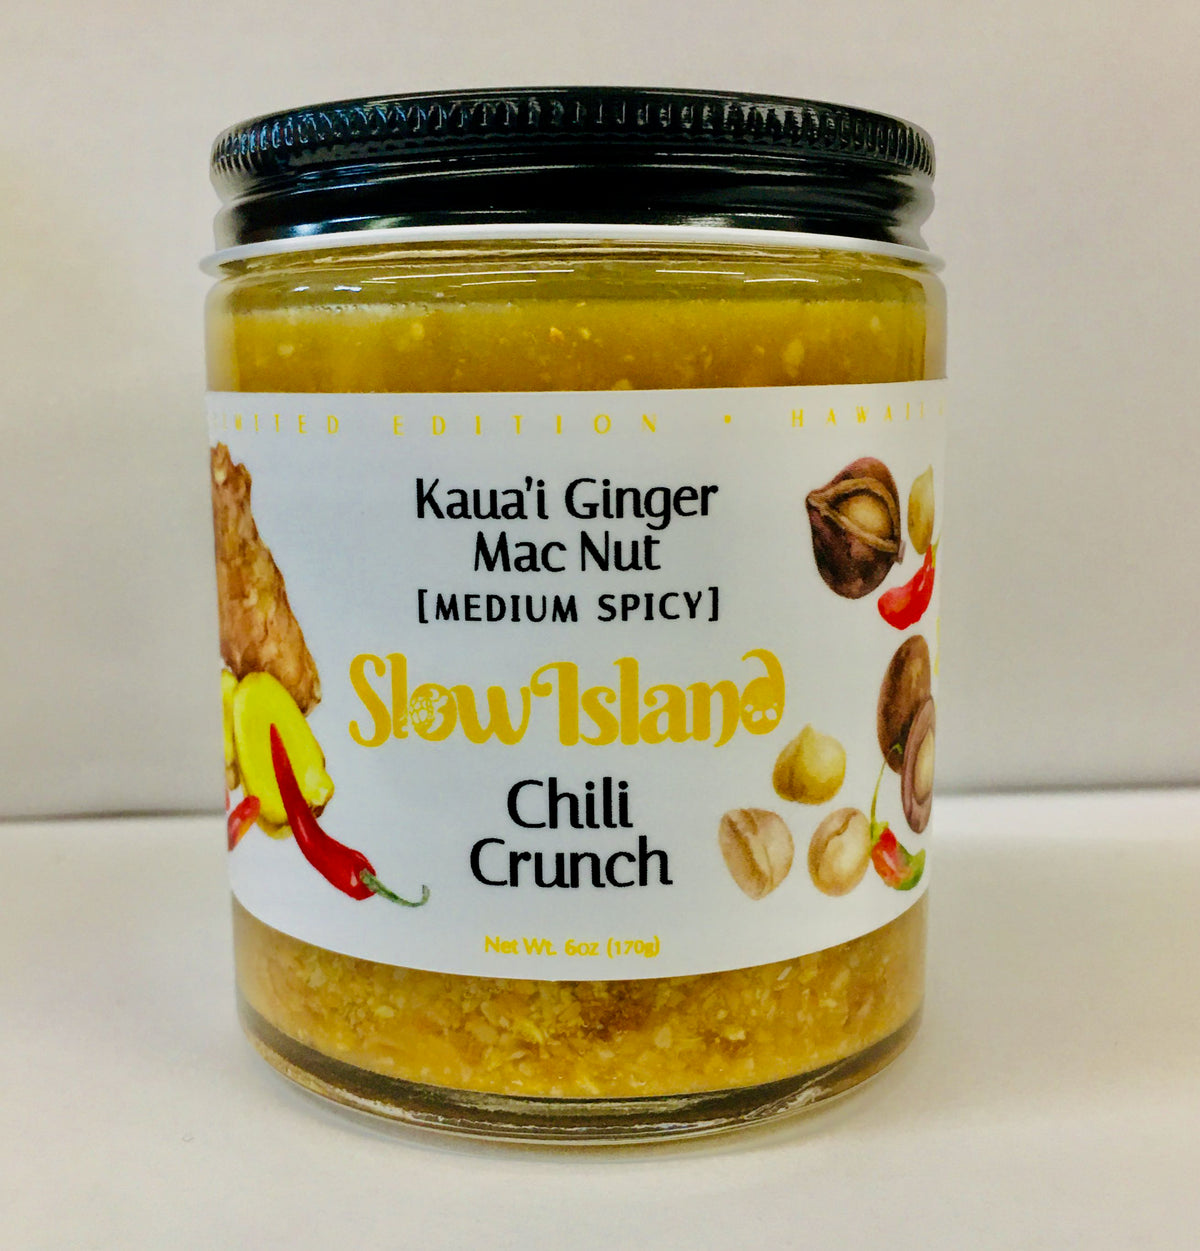 Kaua’i Ginger Mac Nut Chili Crunch